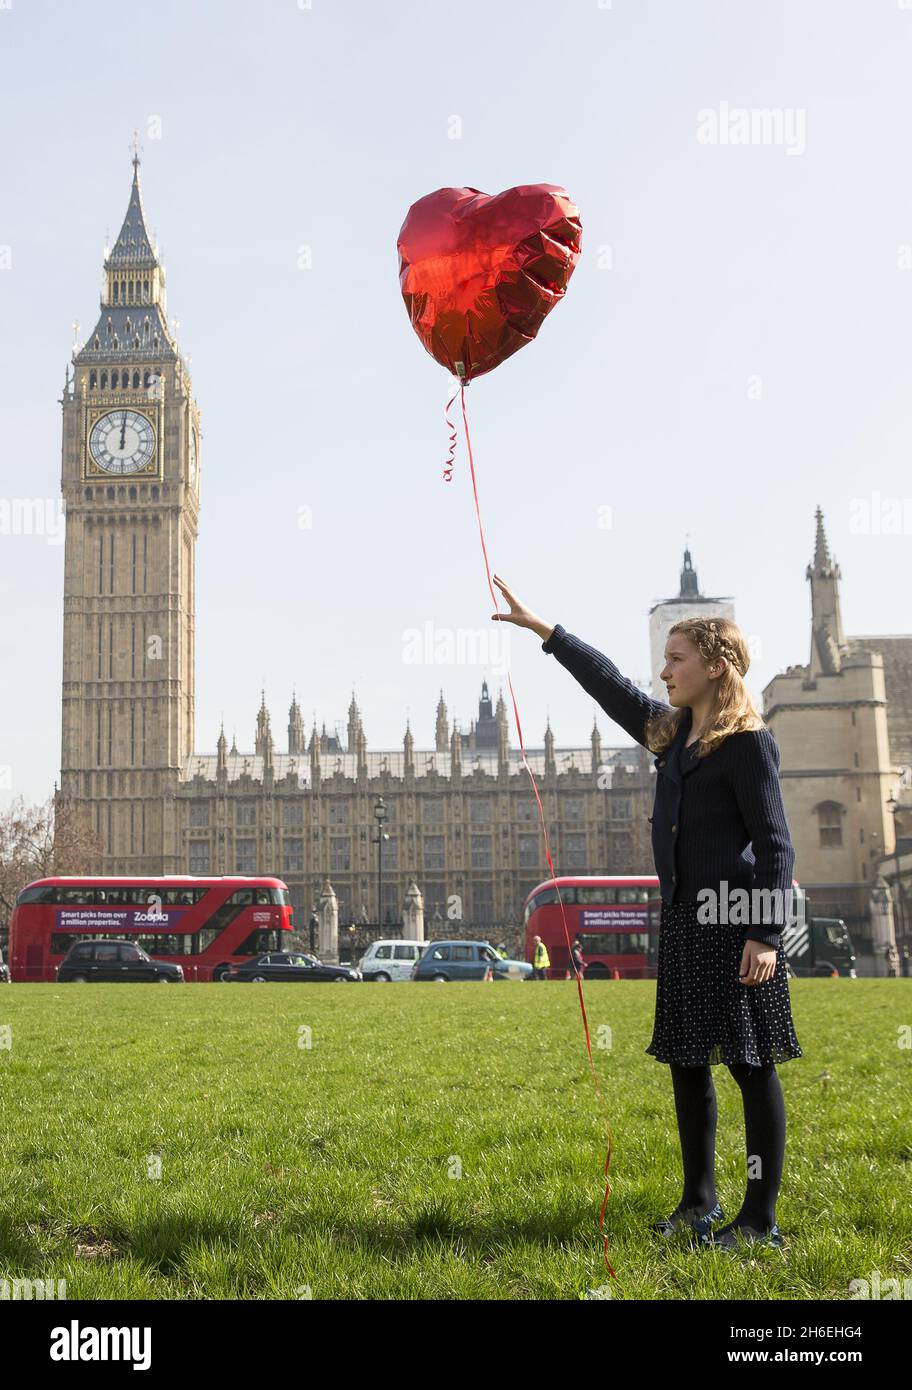 Jeudi 13 mars : sur la place du Parlement de Londres, avec la permission de Banksy, #withsyria et Mili Baxter ont recréé la célèbre image « il y a toujours de l'espoir ».#withsyria veillée a également eu lieu dans le monde entier pour sensibiliser le public au troisième anniversaire du conflit syrien.Cela a été marqué par la libération simultanée de ballons rouges à New York, Washington DC, Moscou, Paris et le plus grand camp de réfugiés syriens de Jordanie, le camp de ZA'atari. Banque D'Images